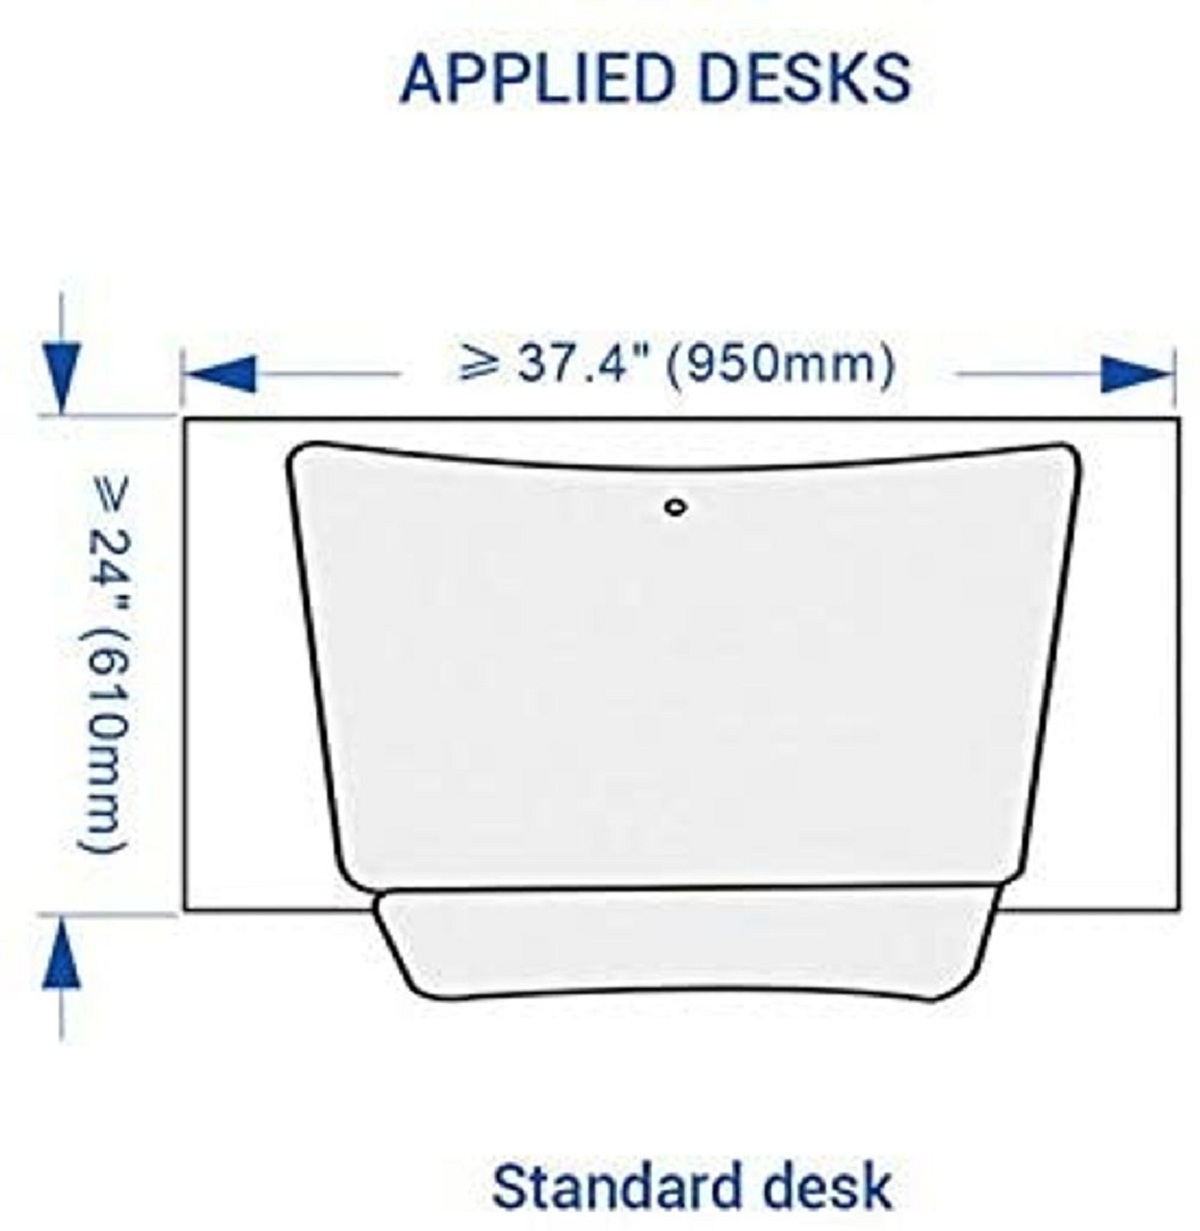 FLEXISPOT M3B Höhenverstellbarer Schreibtisch